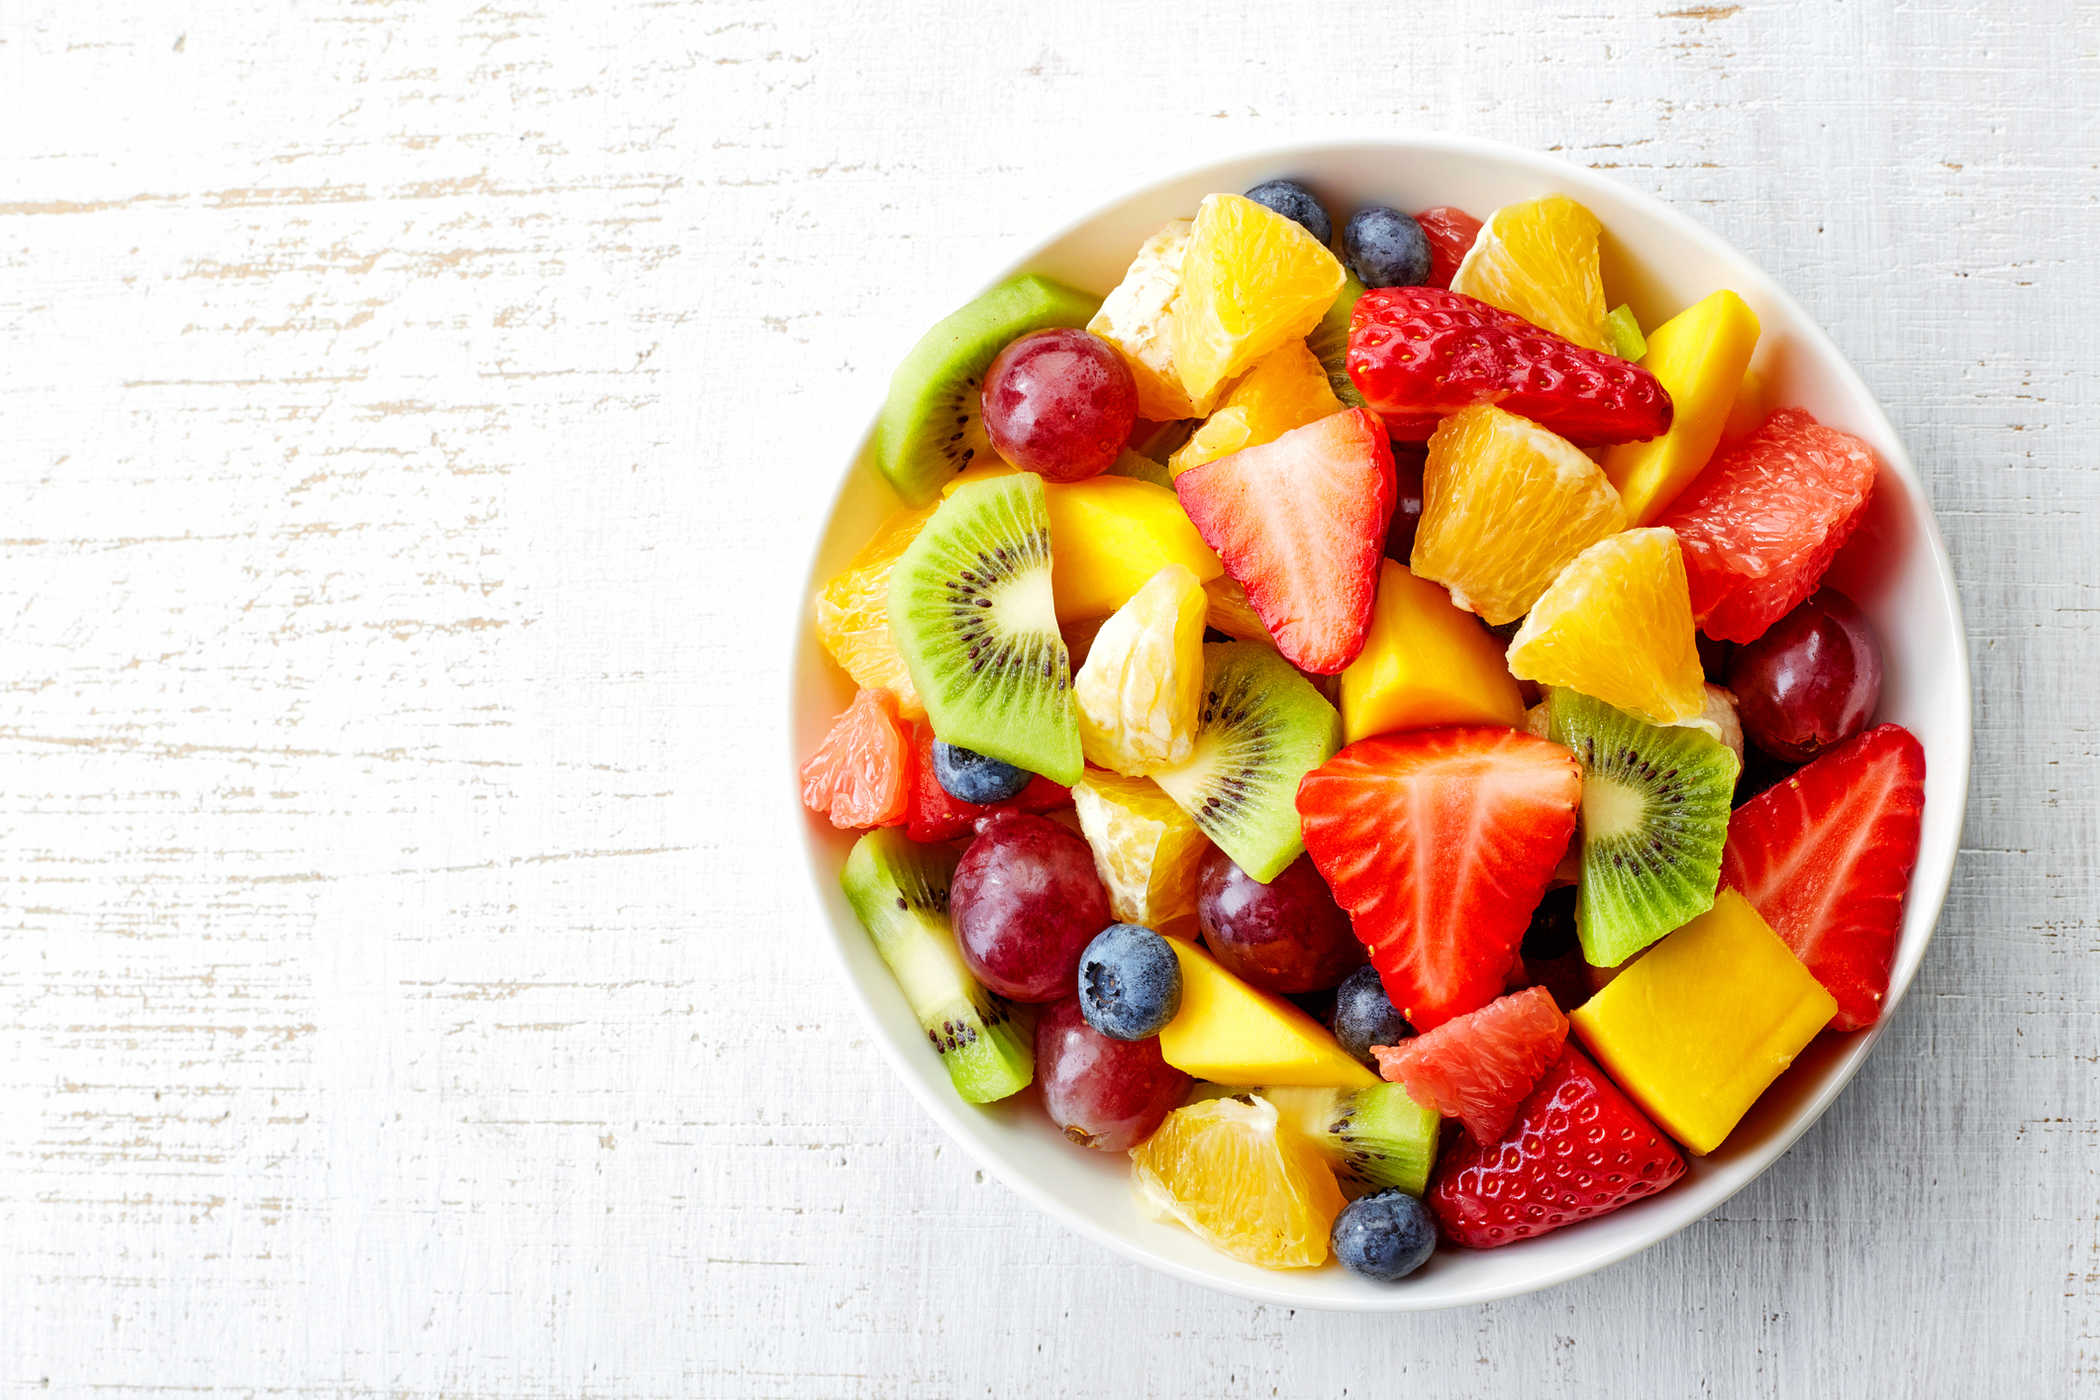 Konzumace čerstvého ovoce snižuje riziko vzniku cukrovky